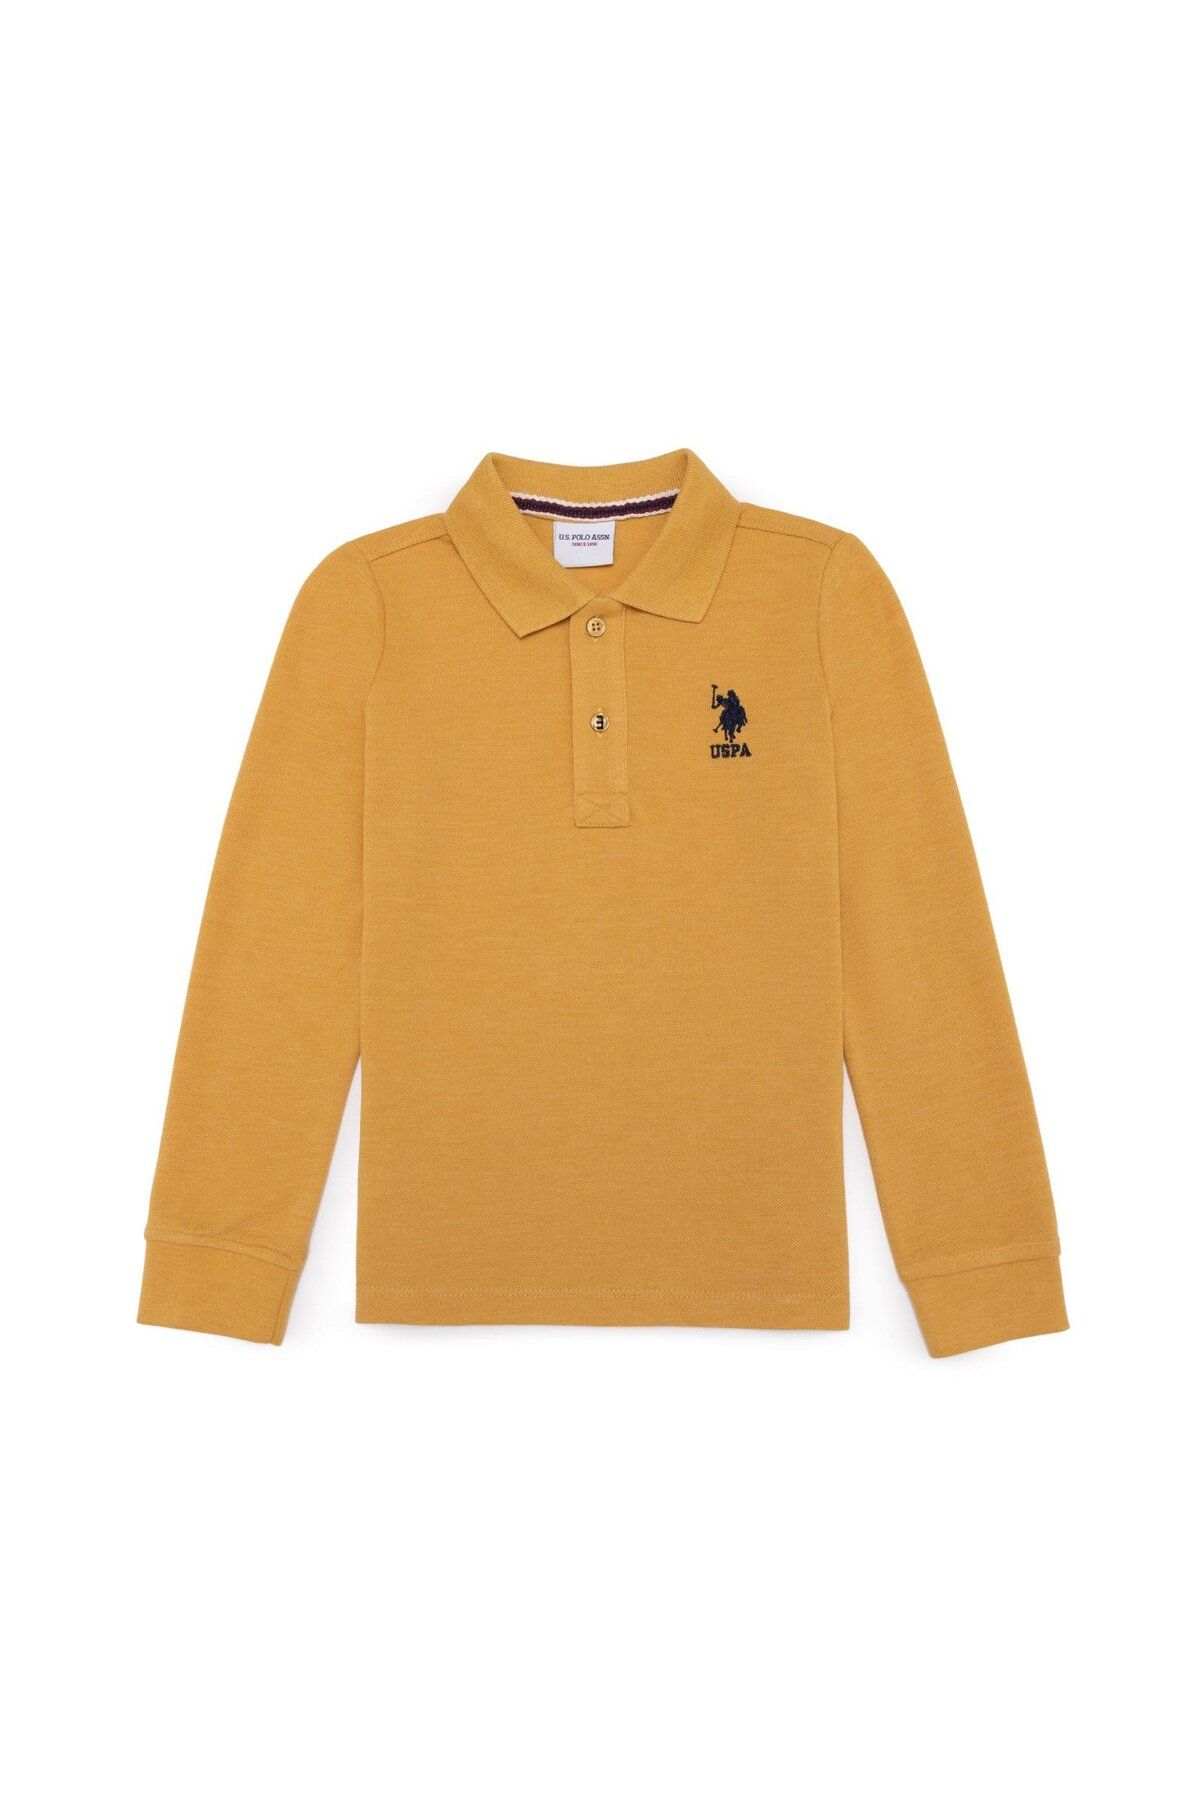 U.S. Polo Assn. Erkek Çocuk Safran Melanj Basic Sweatshirt